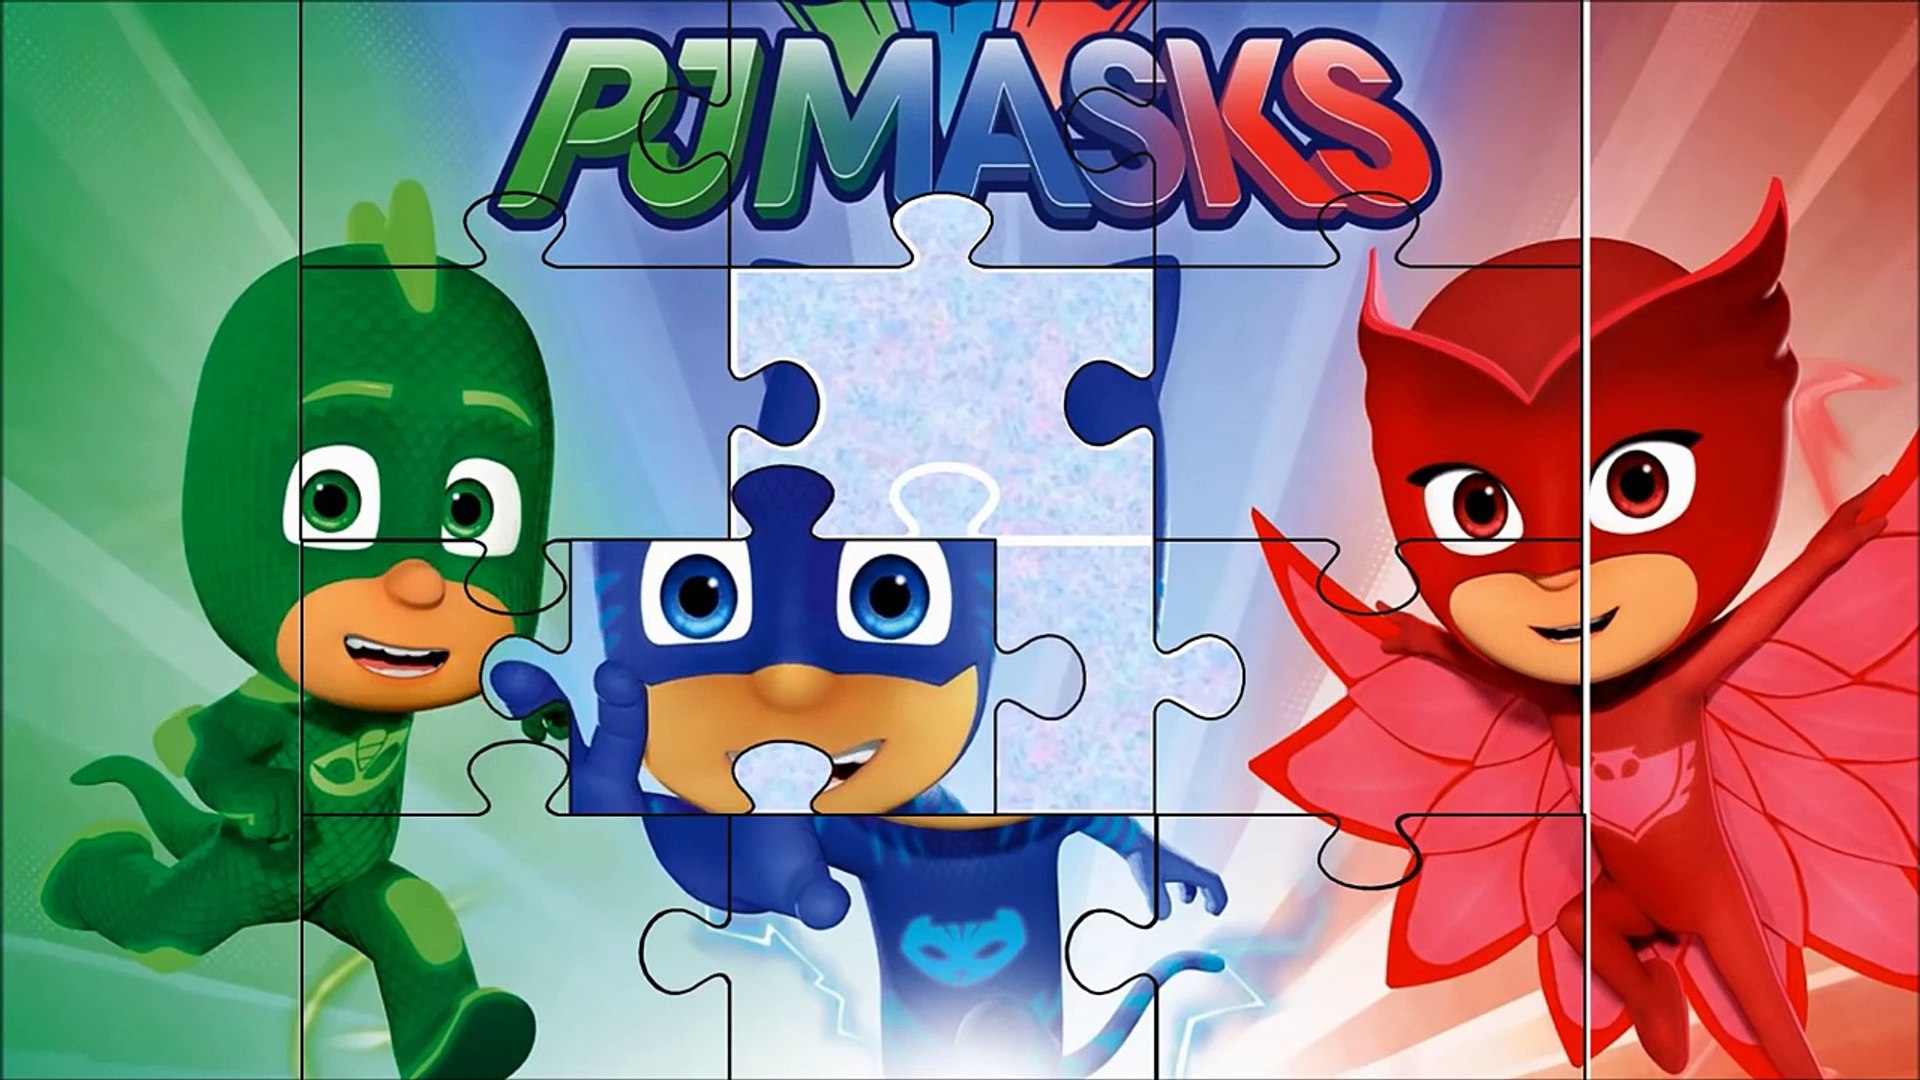 Pj Masks heroes en pijamas en español puzzle completo 4 - Geometricas en ingles - video Dailymotion